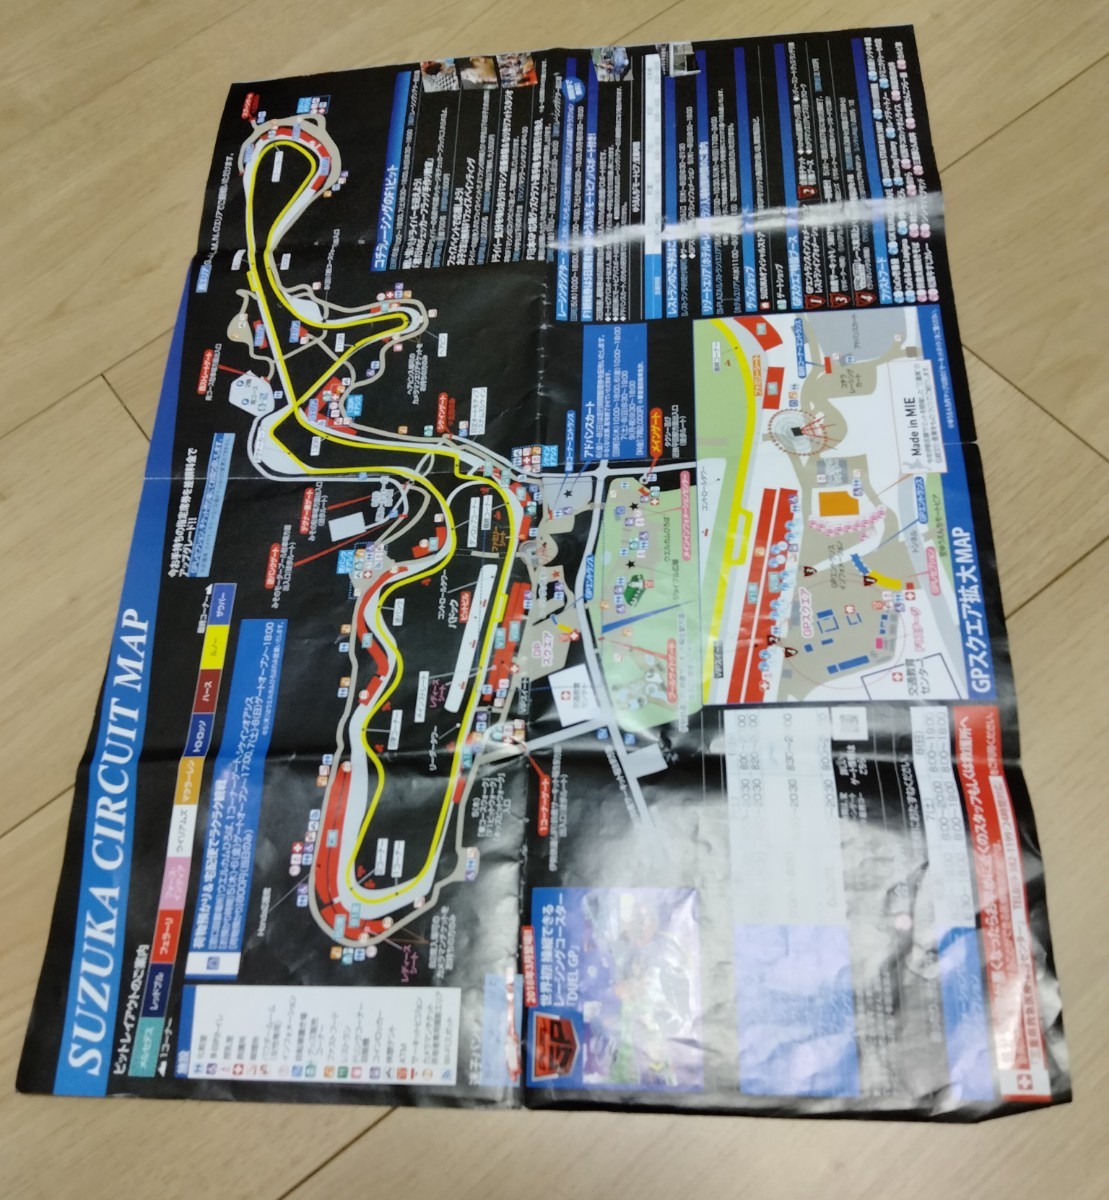 2017 F1世界選手権 鈴鹿 MAP&スケジュール